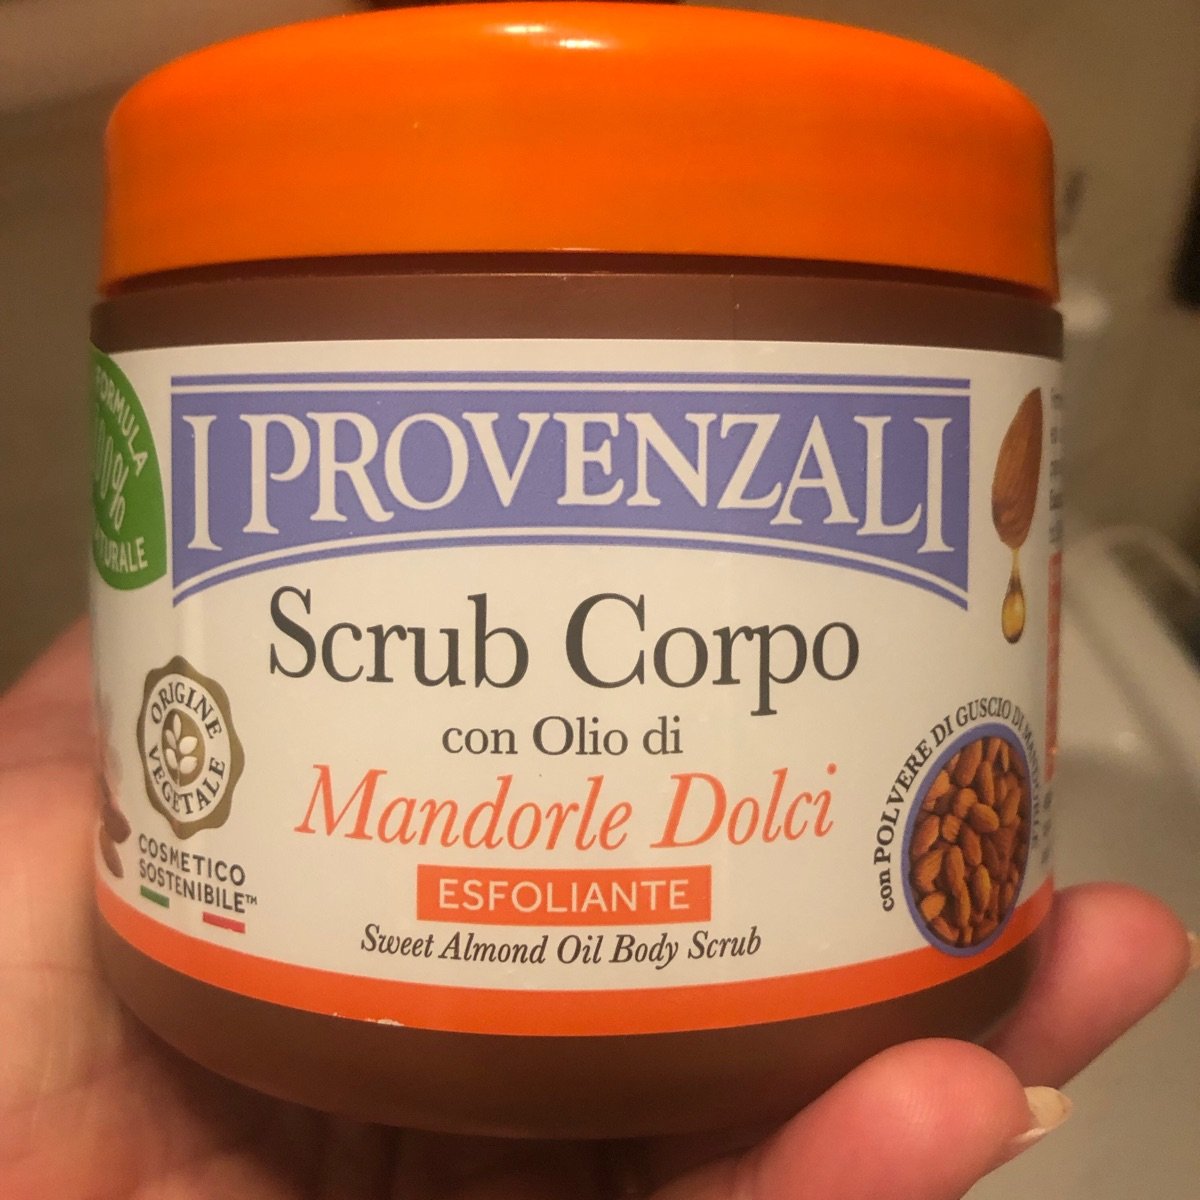 I Provenzali Scrub Corpo con Olio di Mandorle Dolci Reviews | abillion